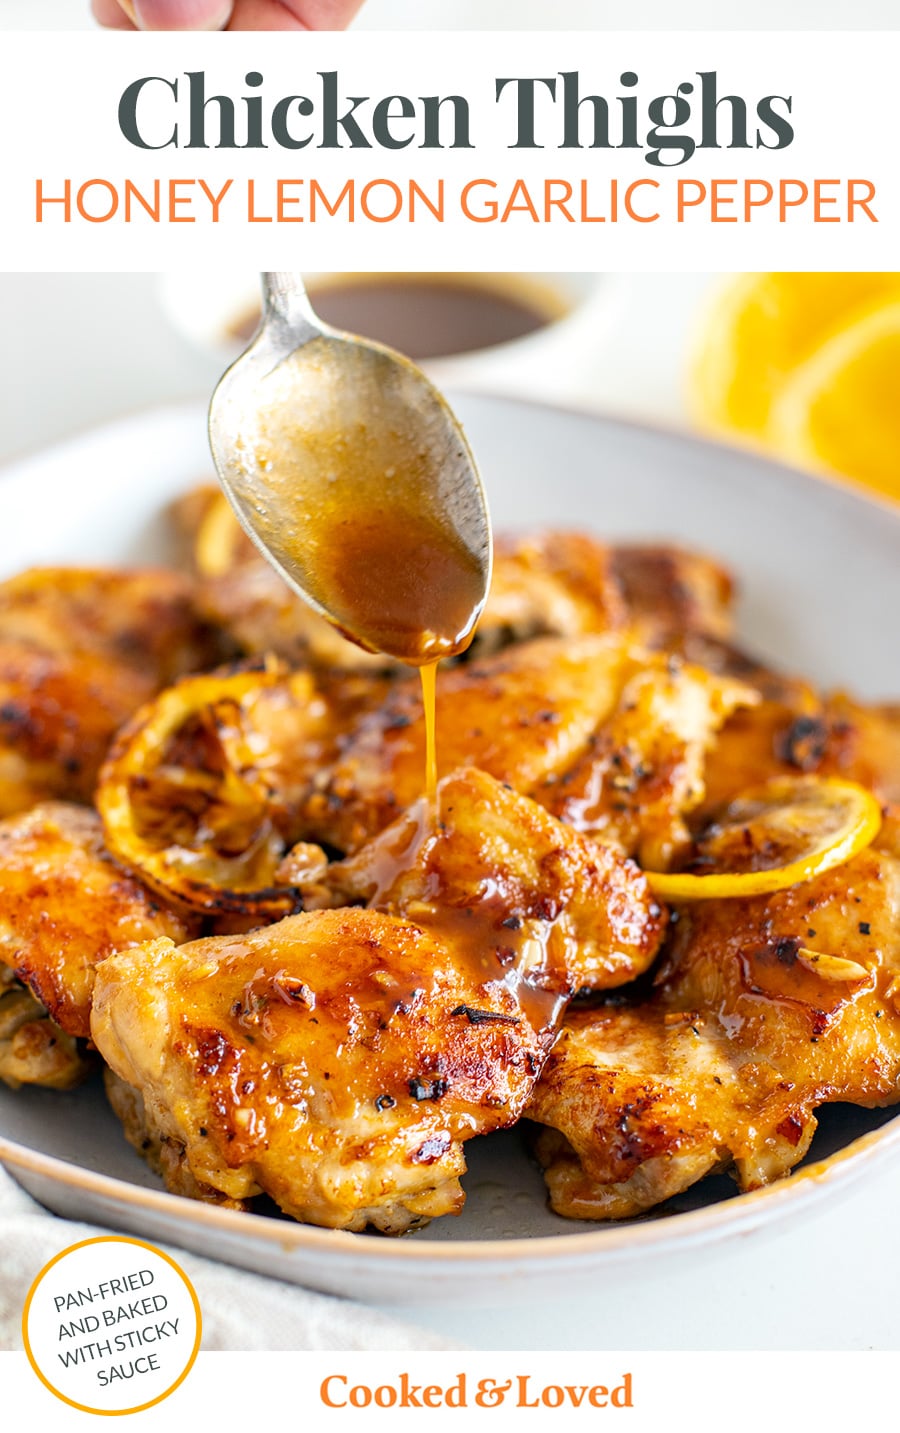 Honey Lemon Garlic Pepper Chicken Thighs - Detoxil